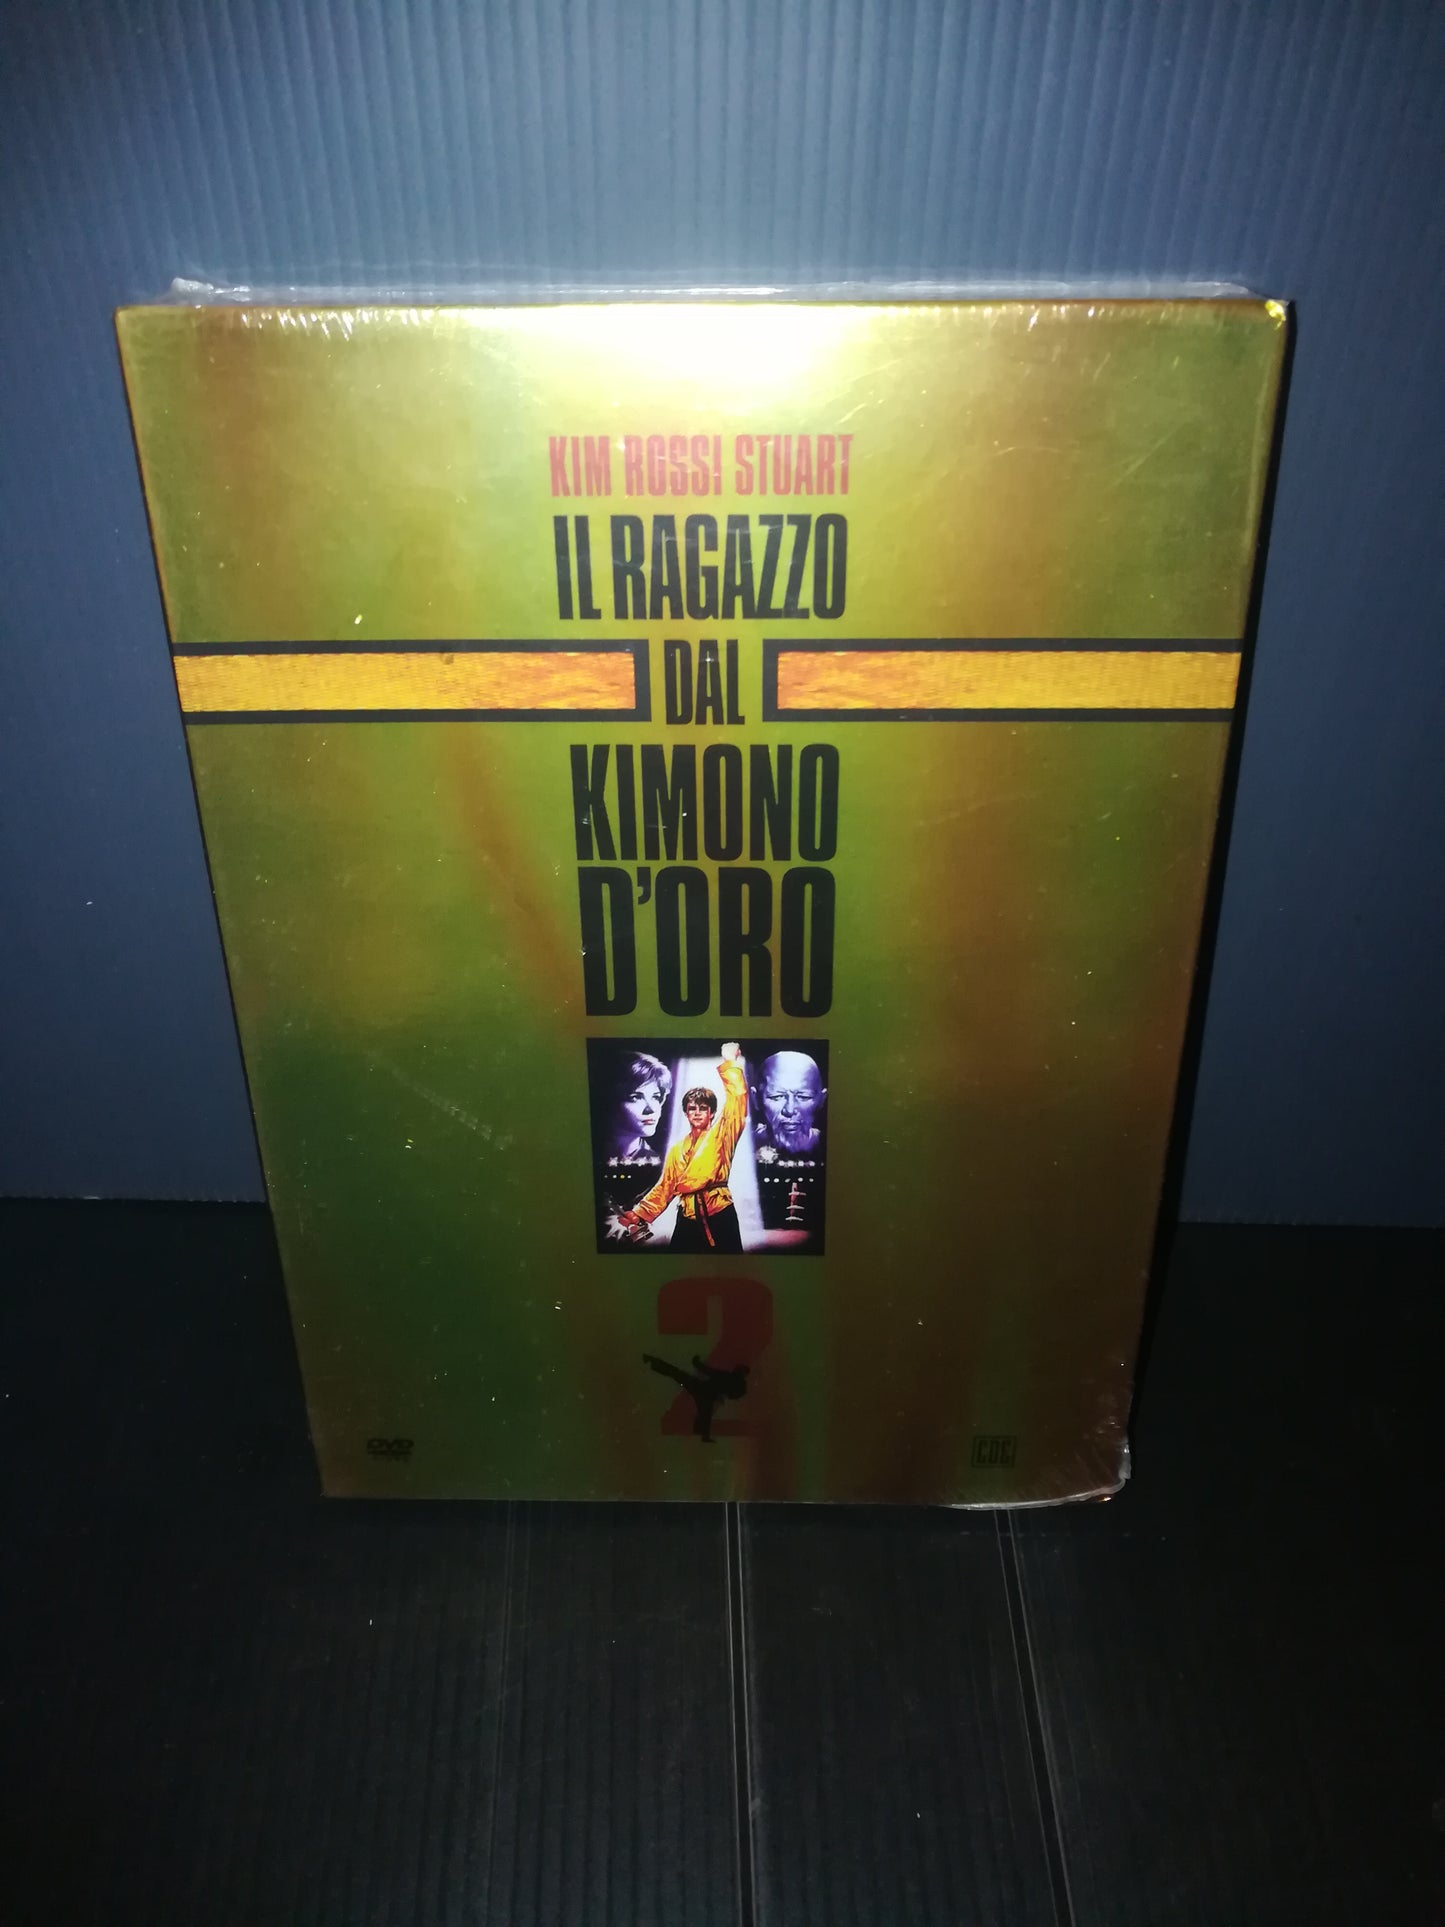 "The Boy in the Golden Kimono 2" DVD